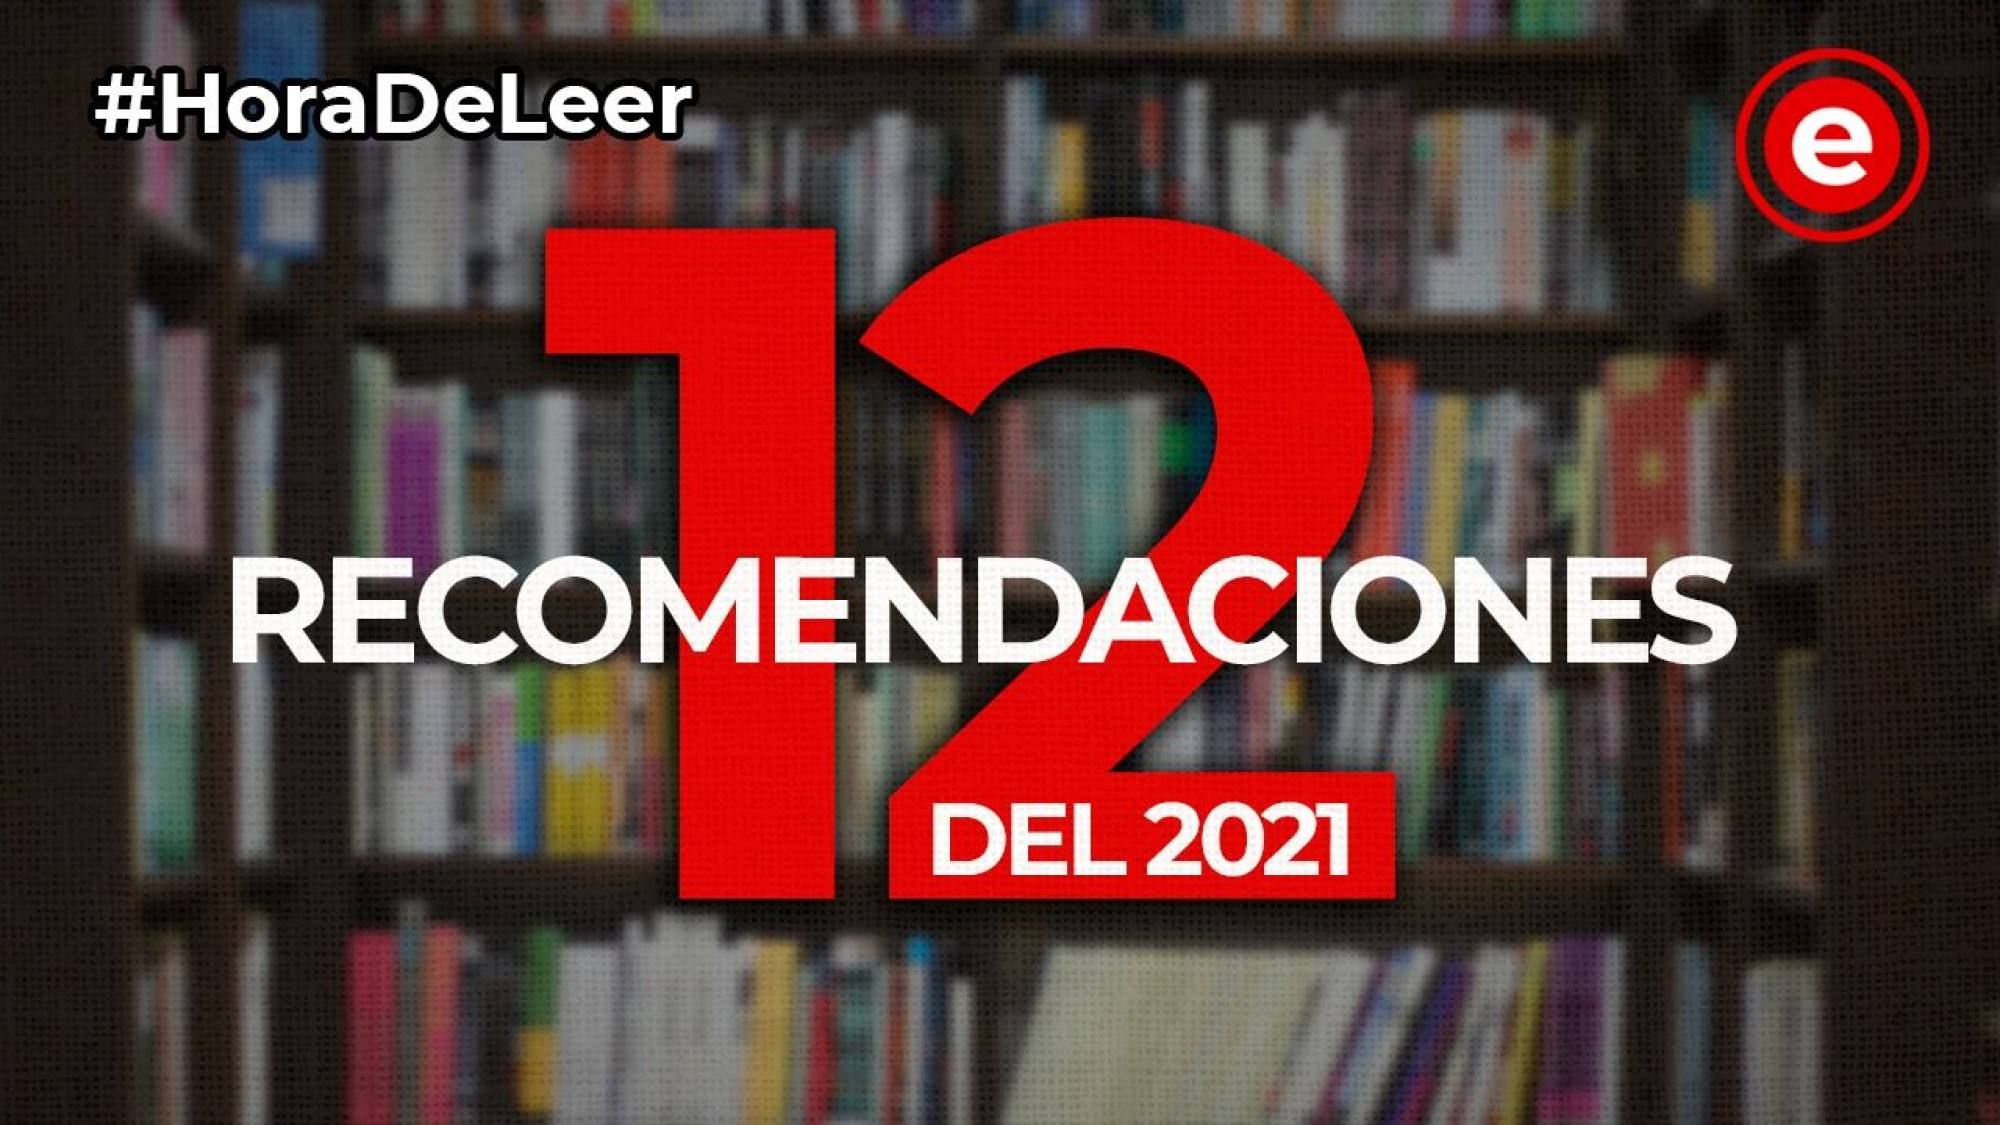 #HoraDeLeer: 12 recomendaciones del 2021, Epicentro TV